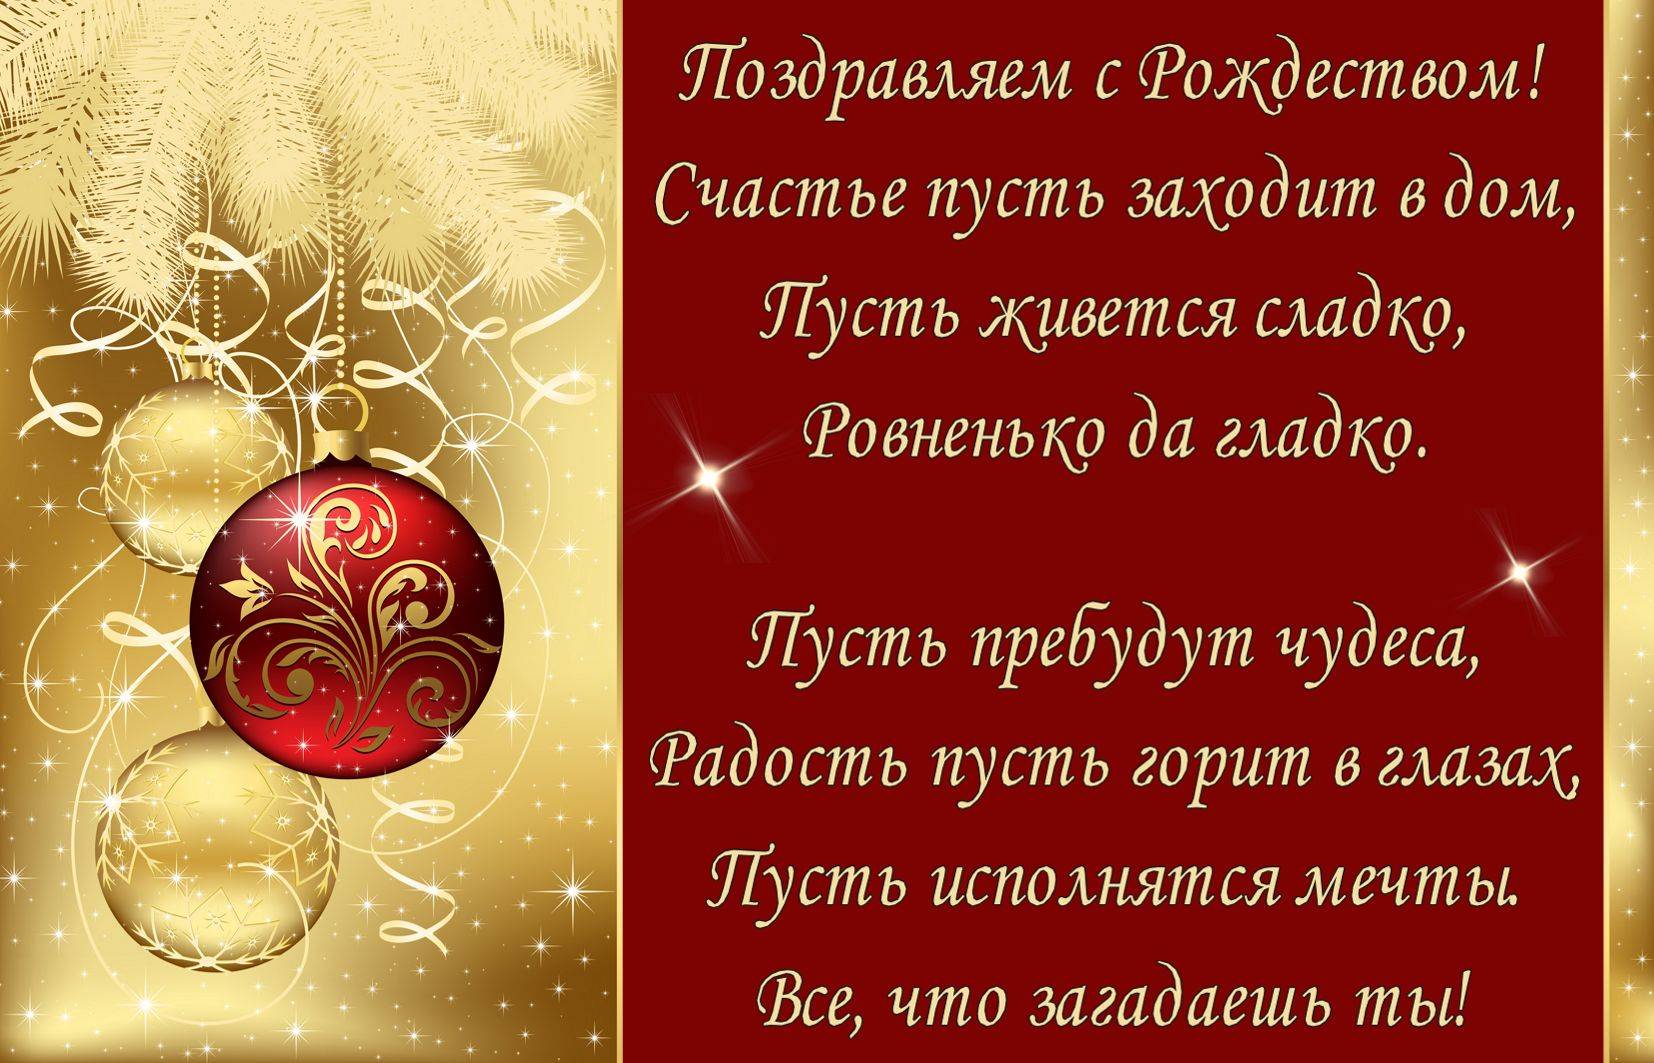 Поздравления с рождеством в прозе своими словами | pzdb.ru - поздравления на все случаи жизни